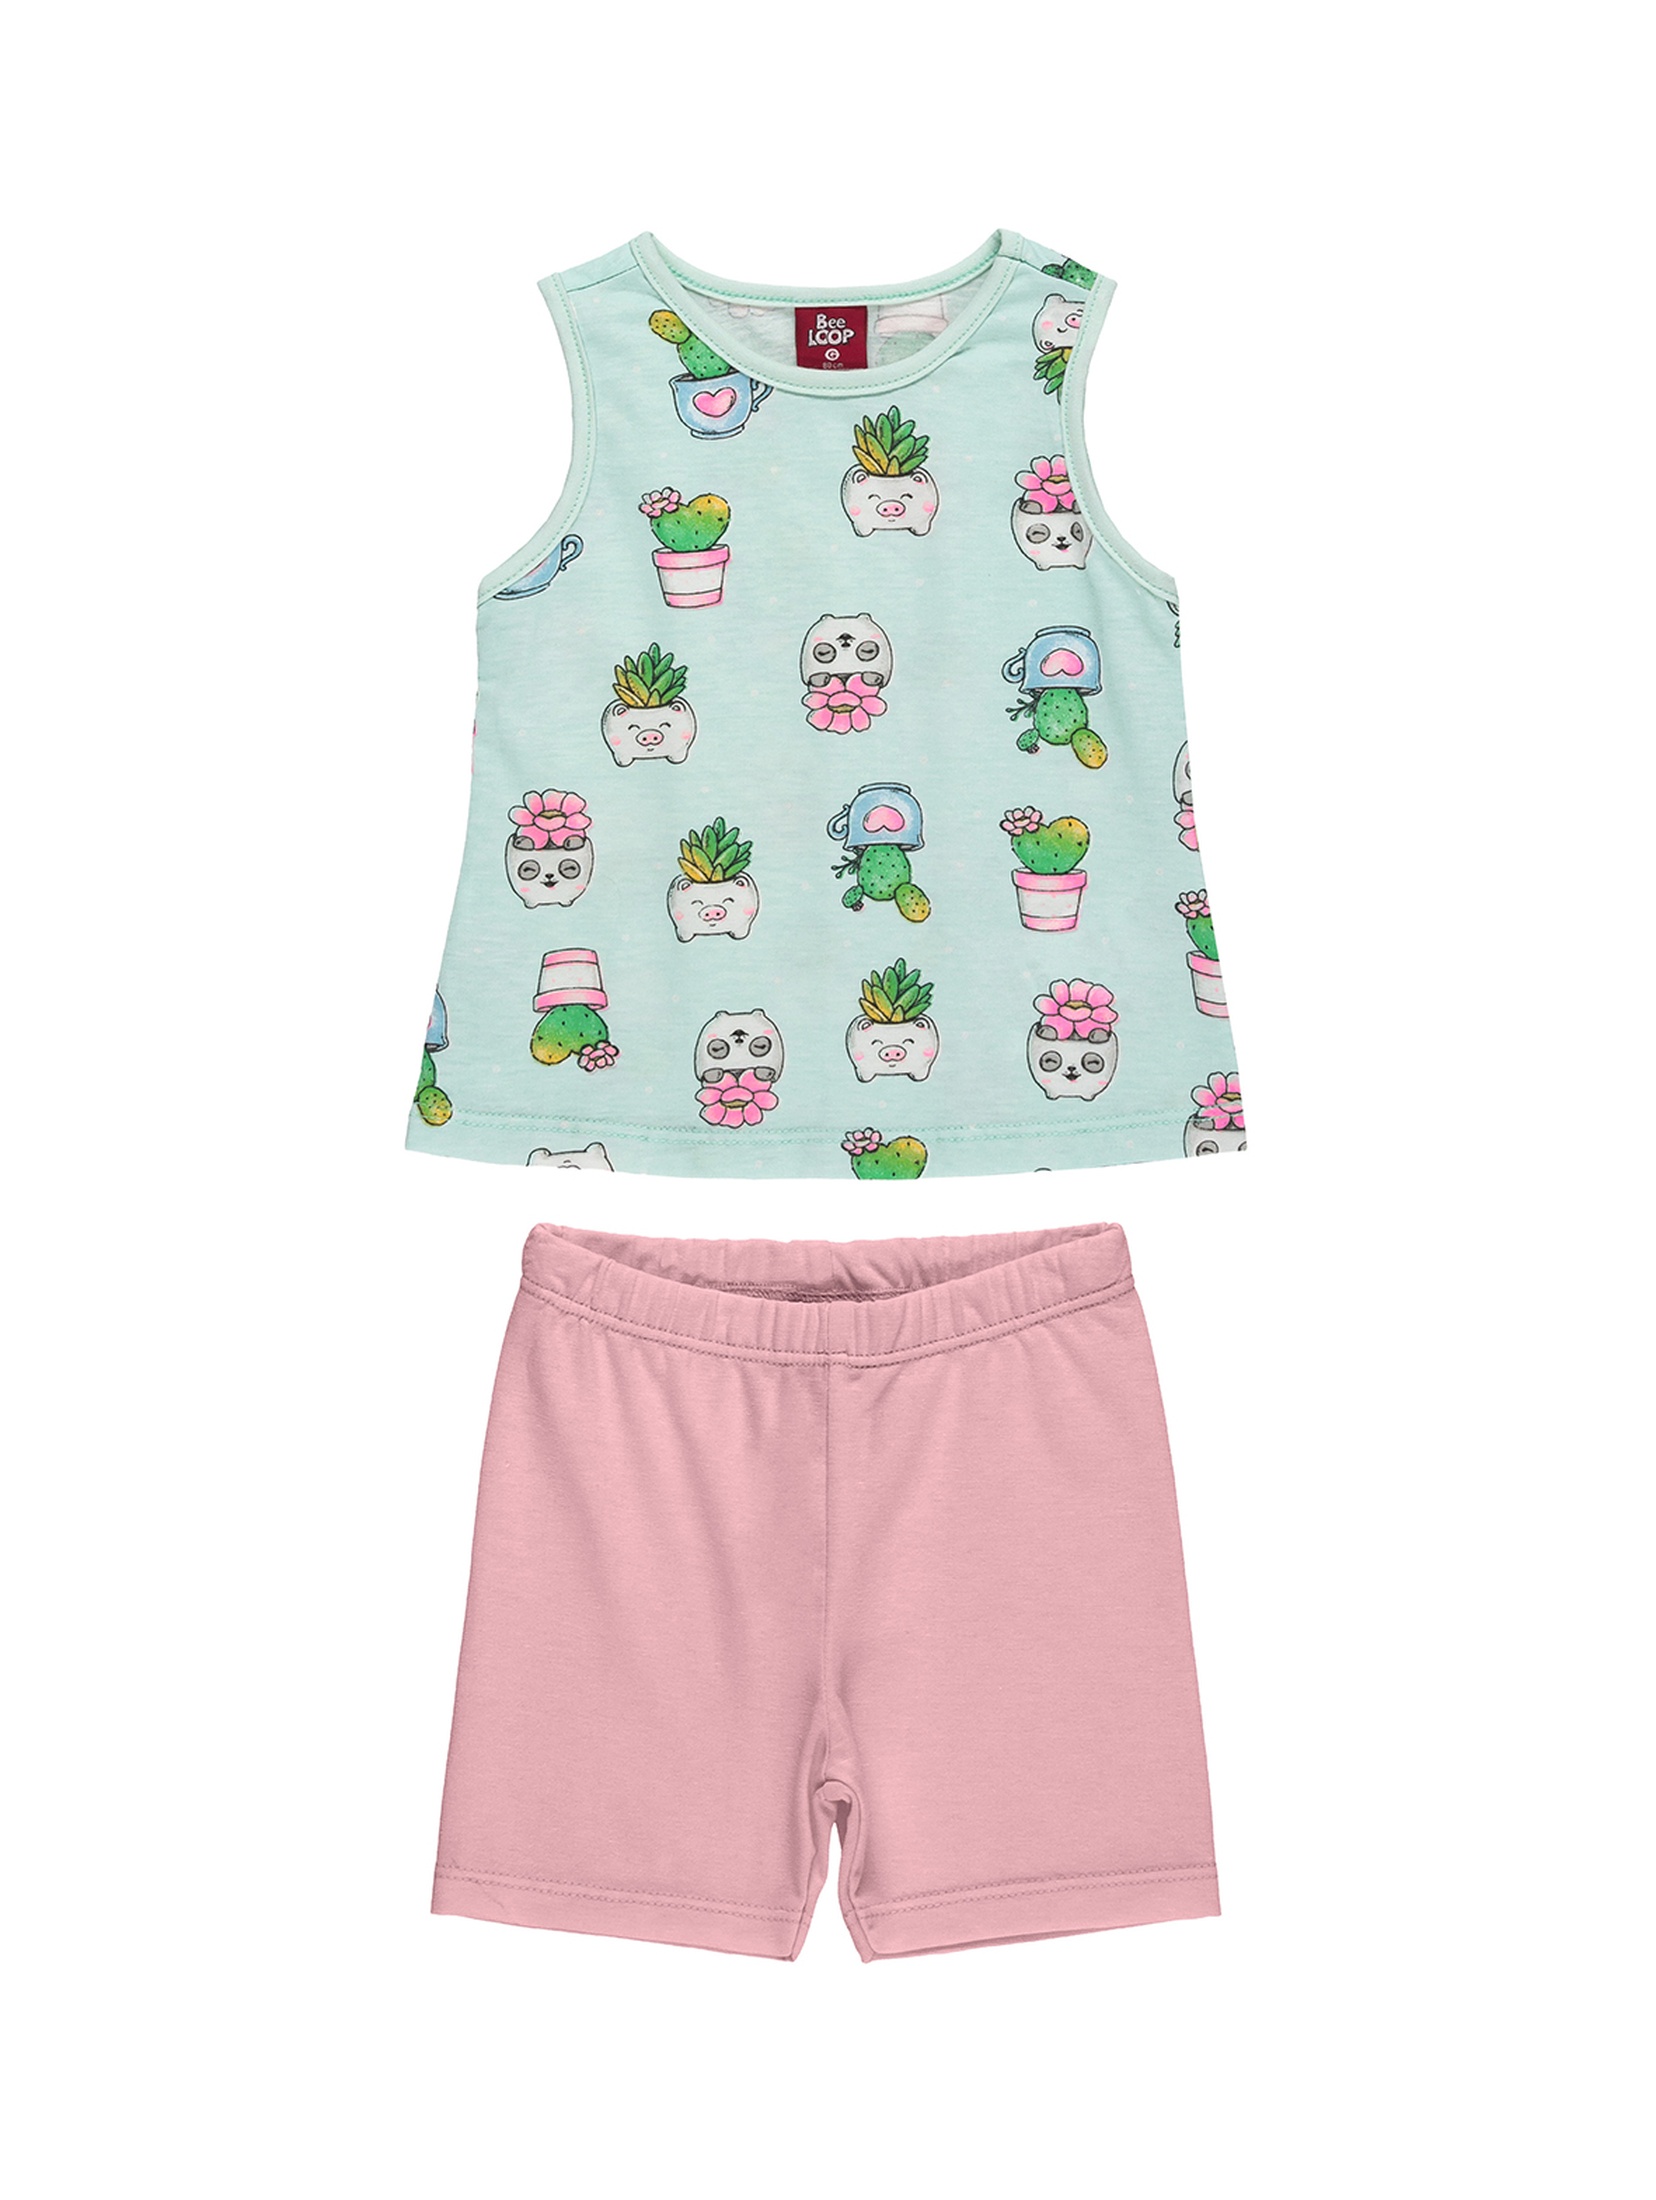 Komplet niemowlęcy dla dziewczynki - t-shirt + szorty